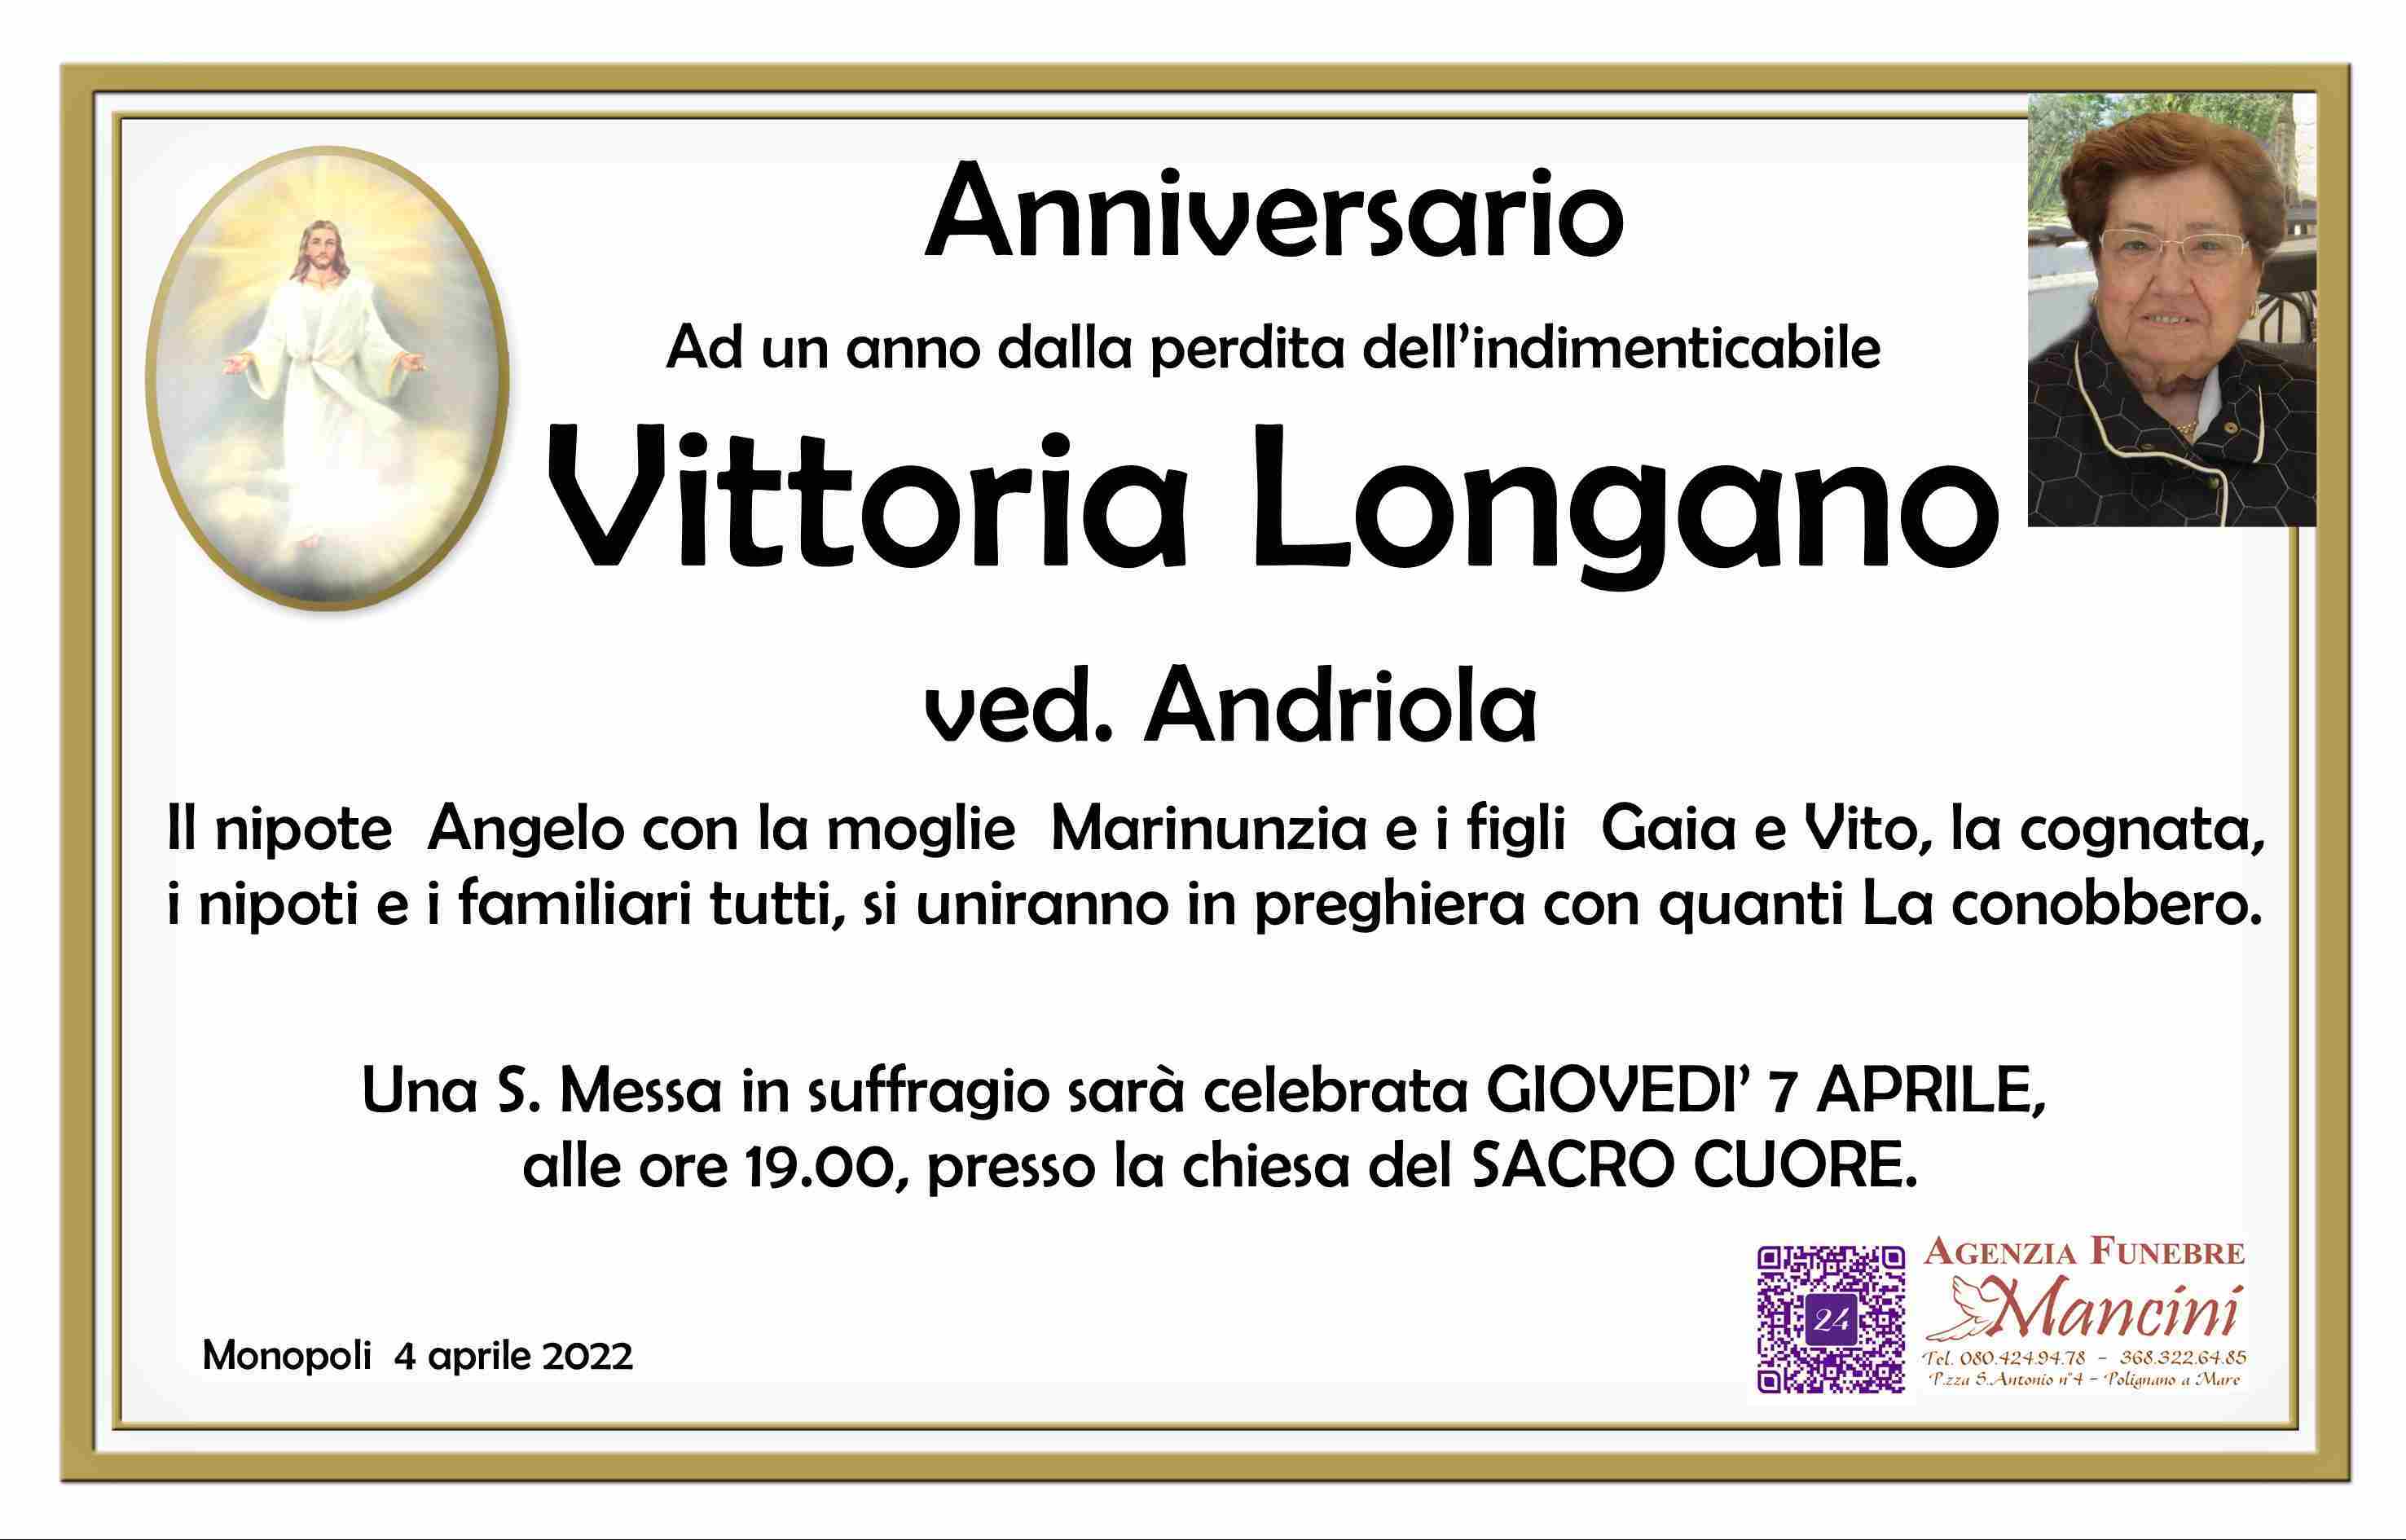 Vittoria Longano